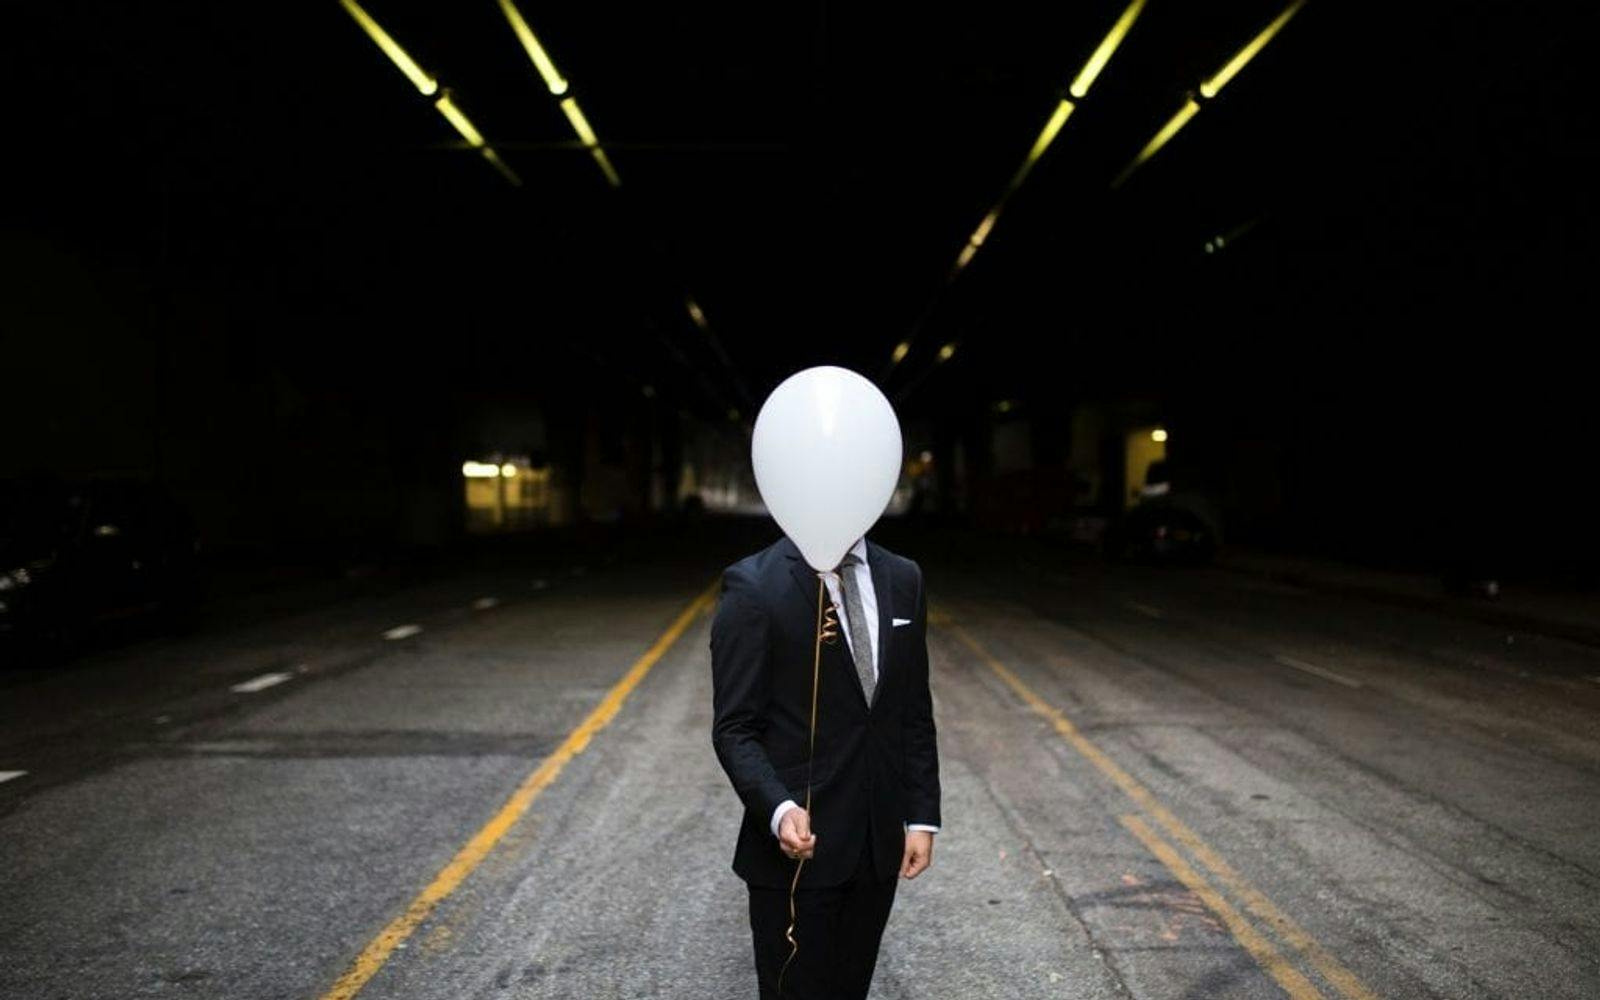 Mann som er anonymisert ved å holde en ballong foran ansiktet